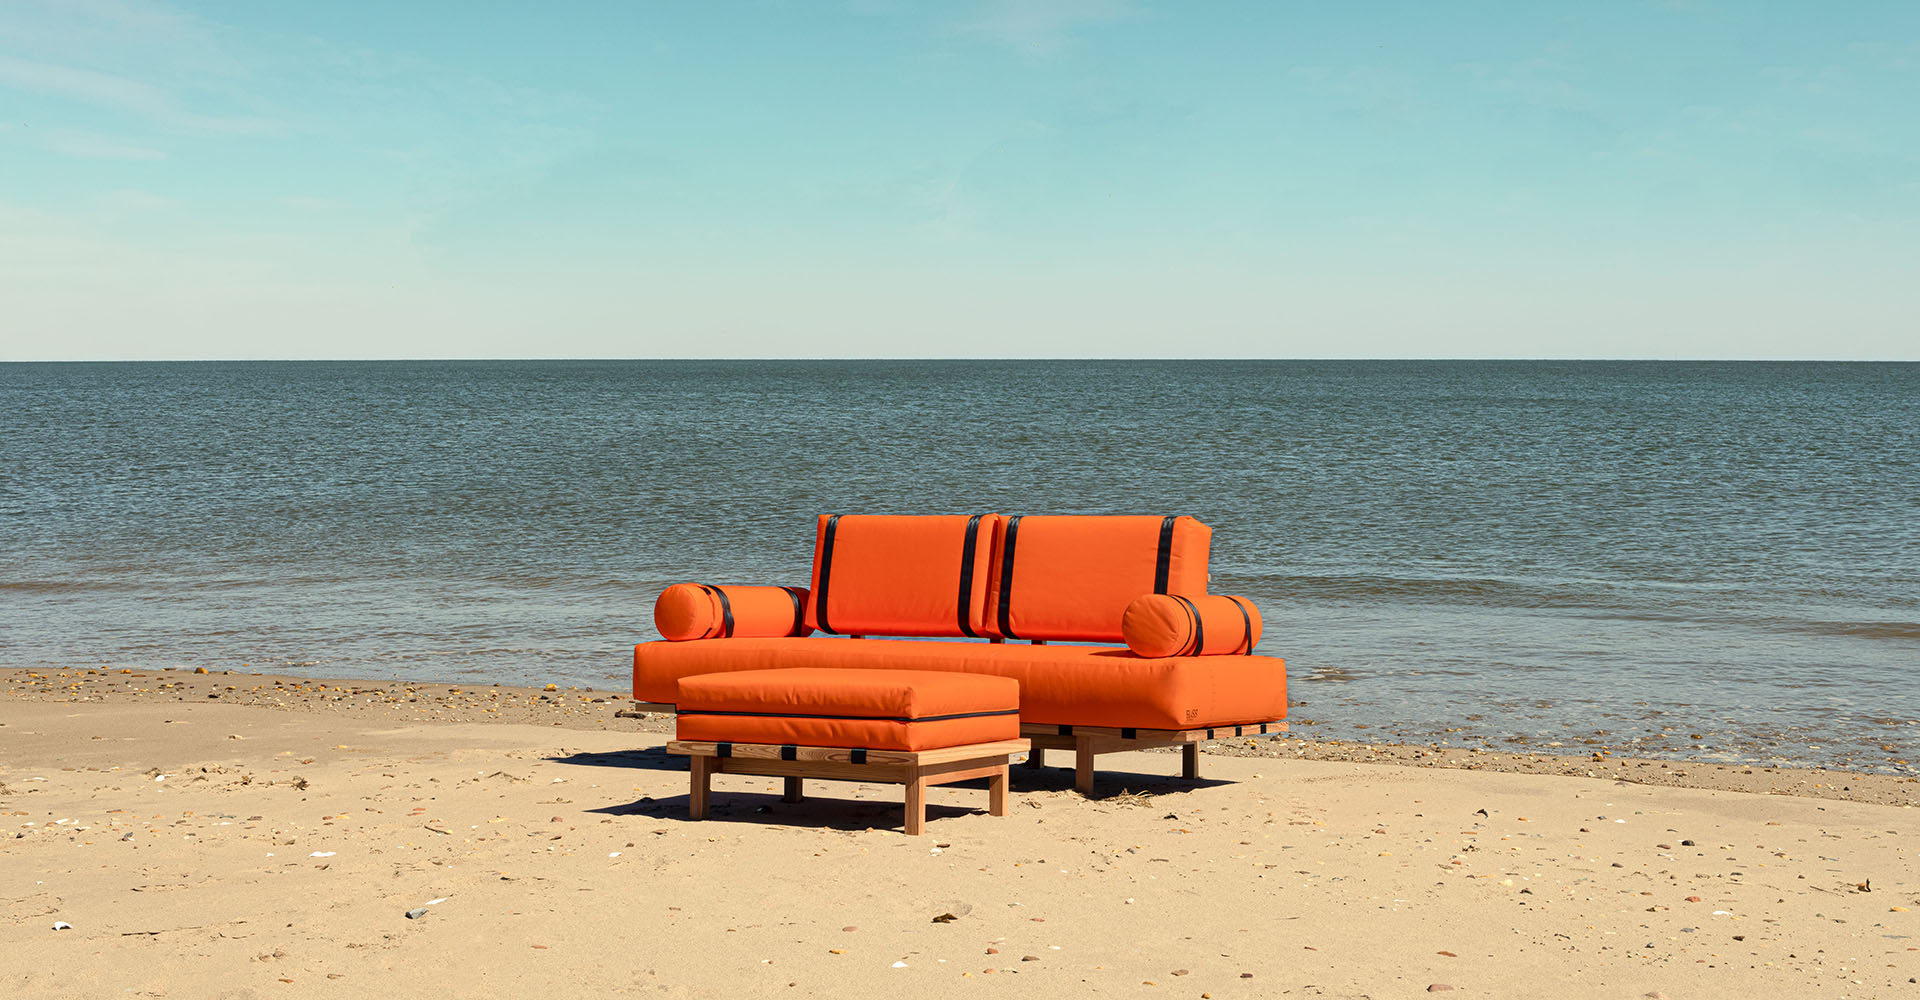 Многофункциональная мебель будущего - креативное агентство Mother создало диван, который спасет вас во время наводнения